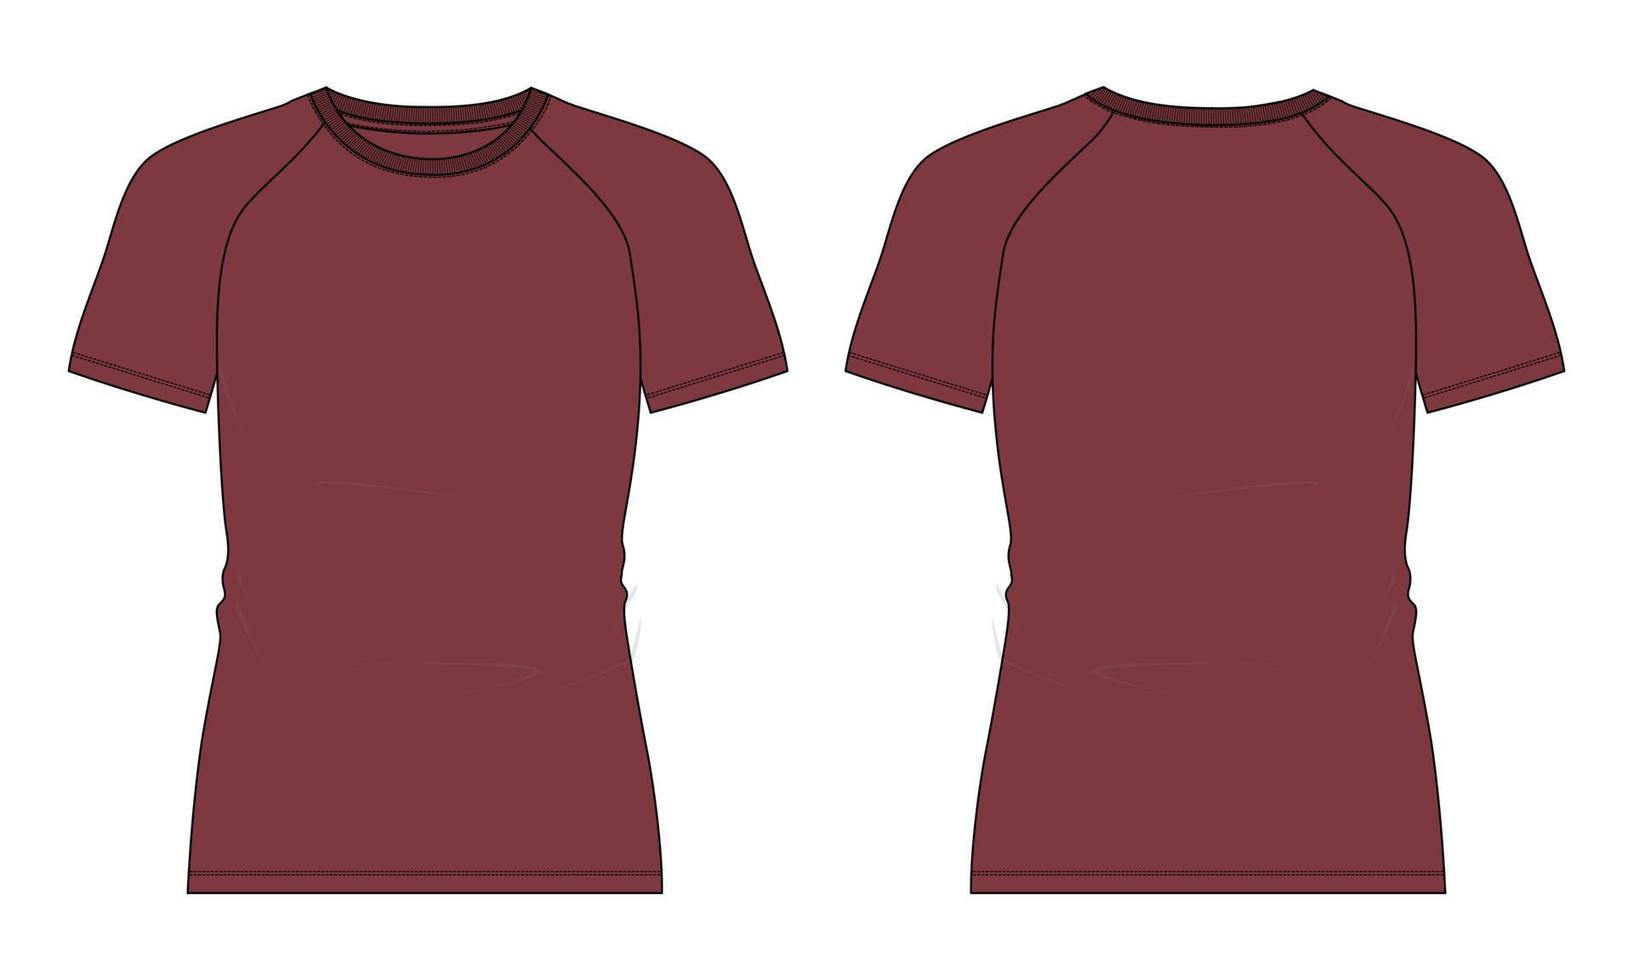 slim fit manga corta camiseta raglán moda técnica boceto plano ilustración vectorial plantilla de color rojo vistas frontal y posterior aisladas en fondo blanco. vector